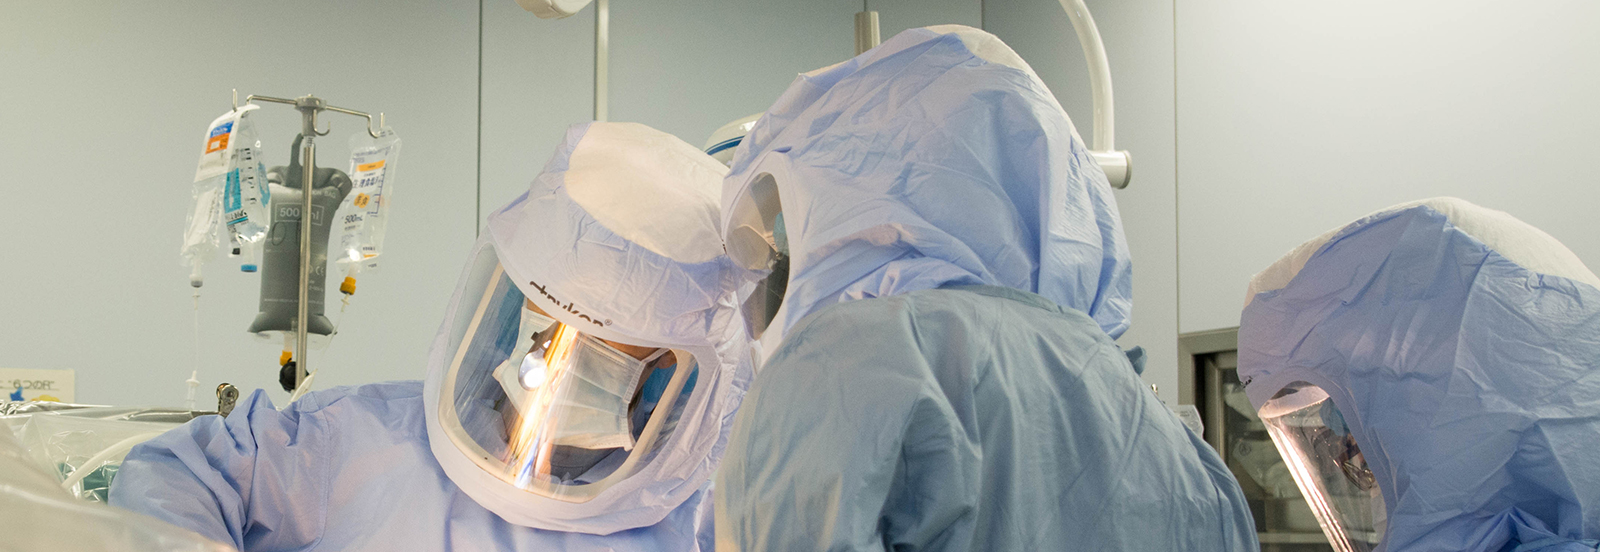 整形外科における防護服を装着した手術風景